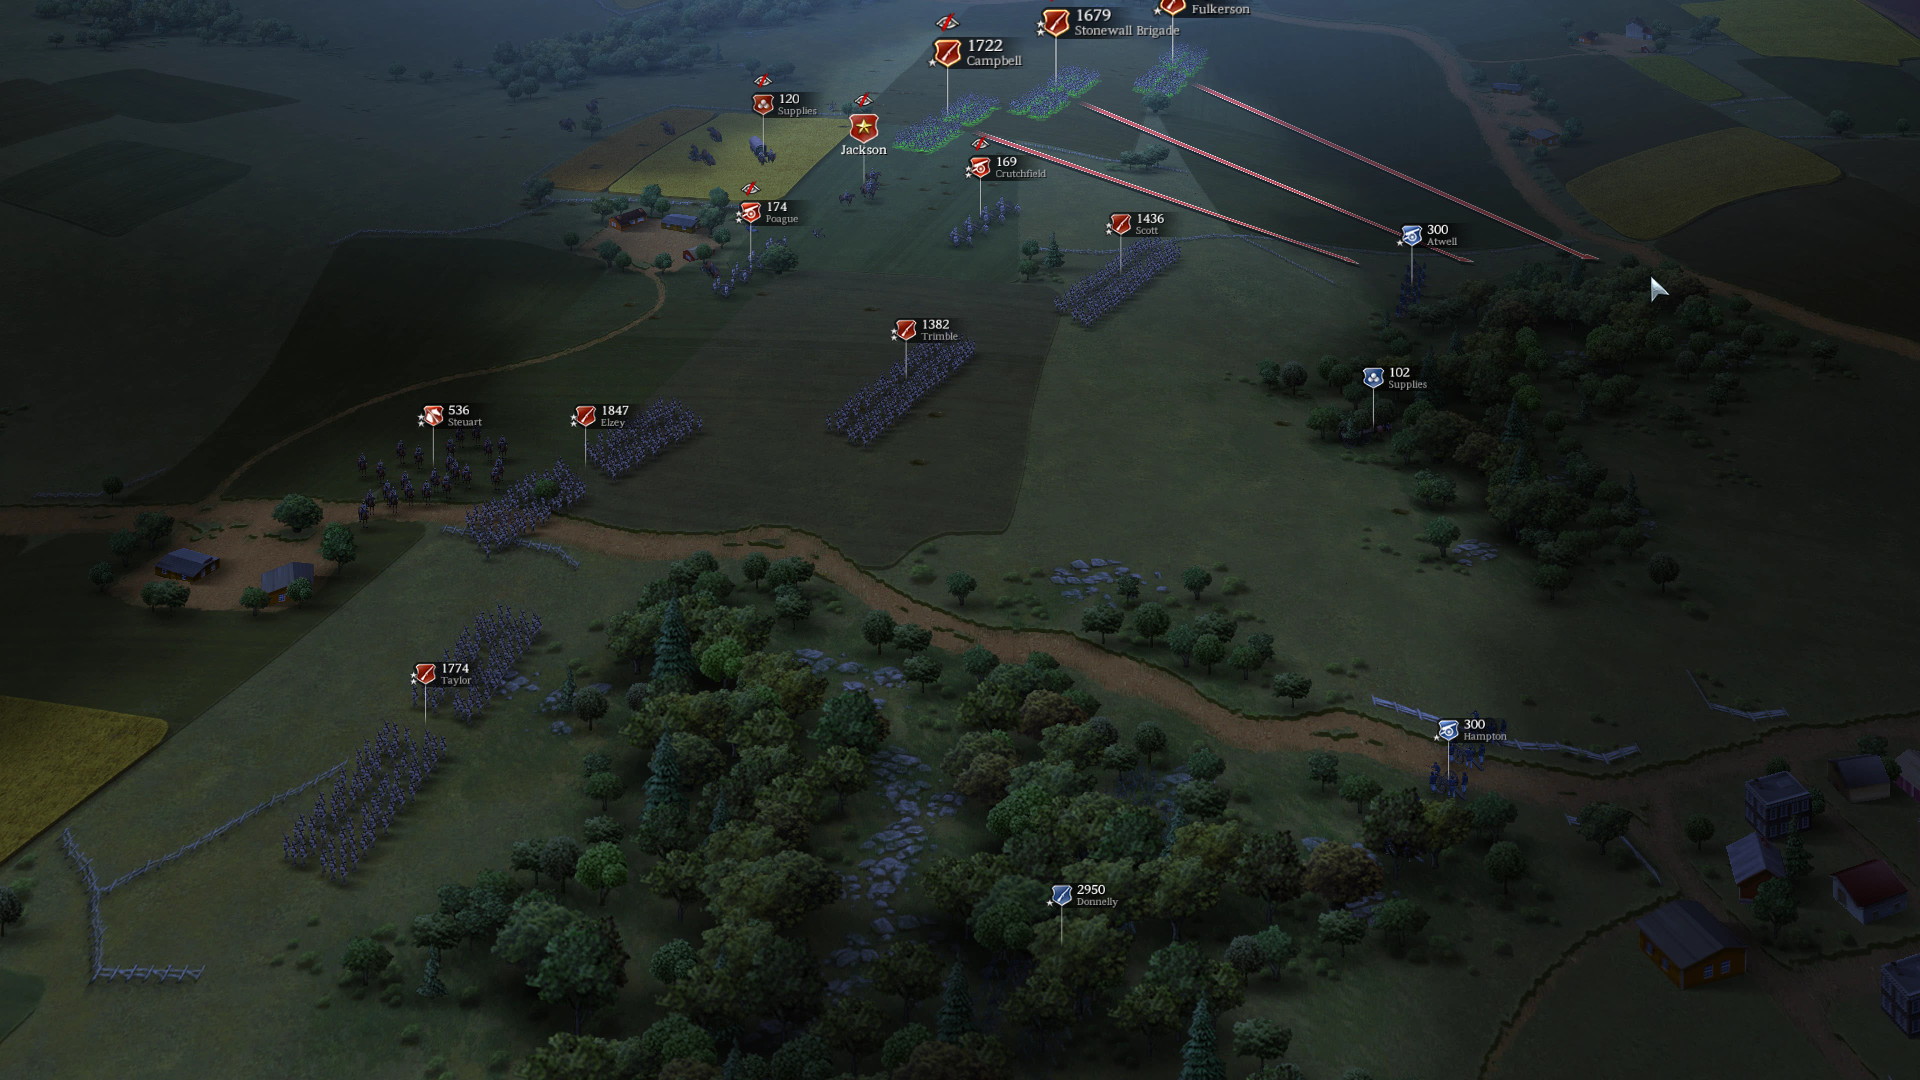 Ultimate General: Civil War - screenshot 2